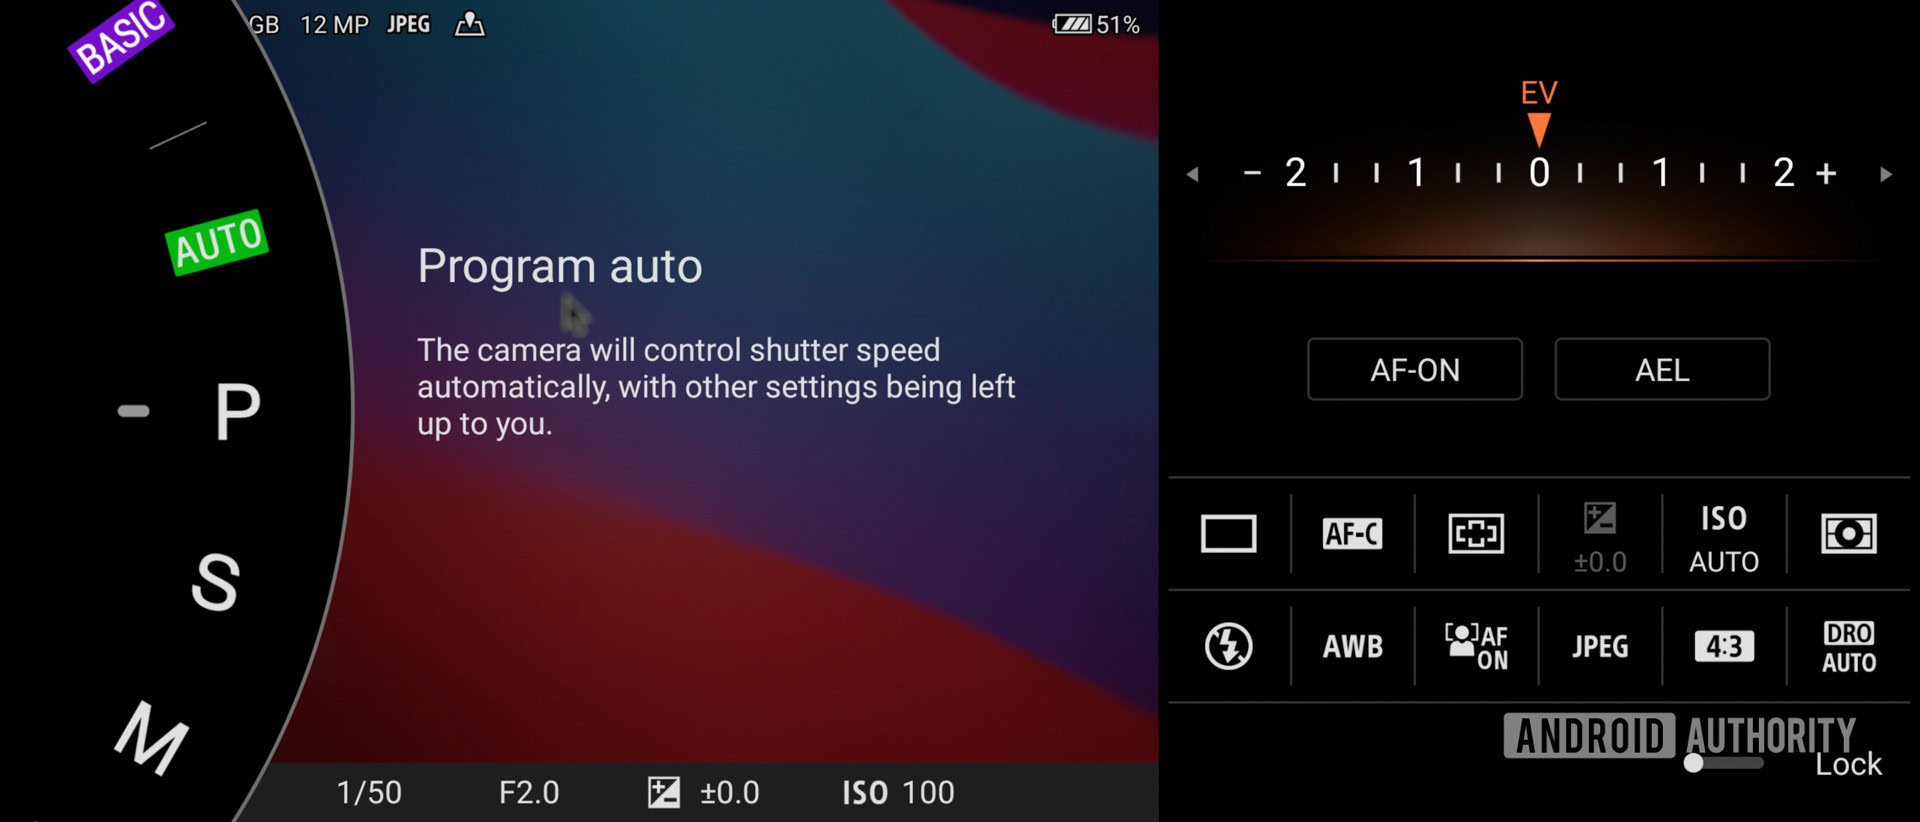 Sony Xperia Pro I Program Auto camera mode